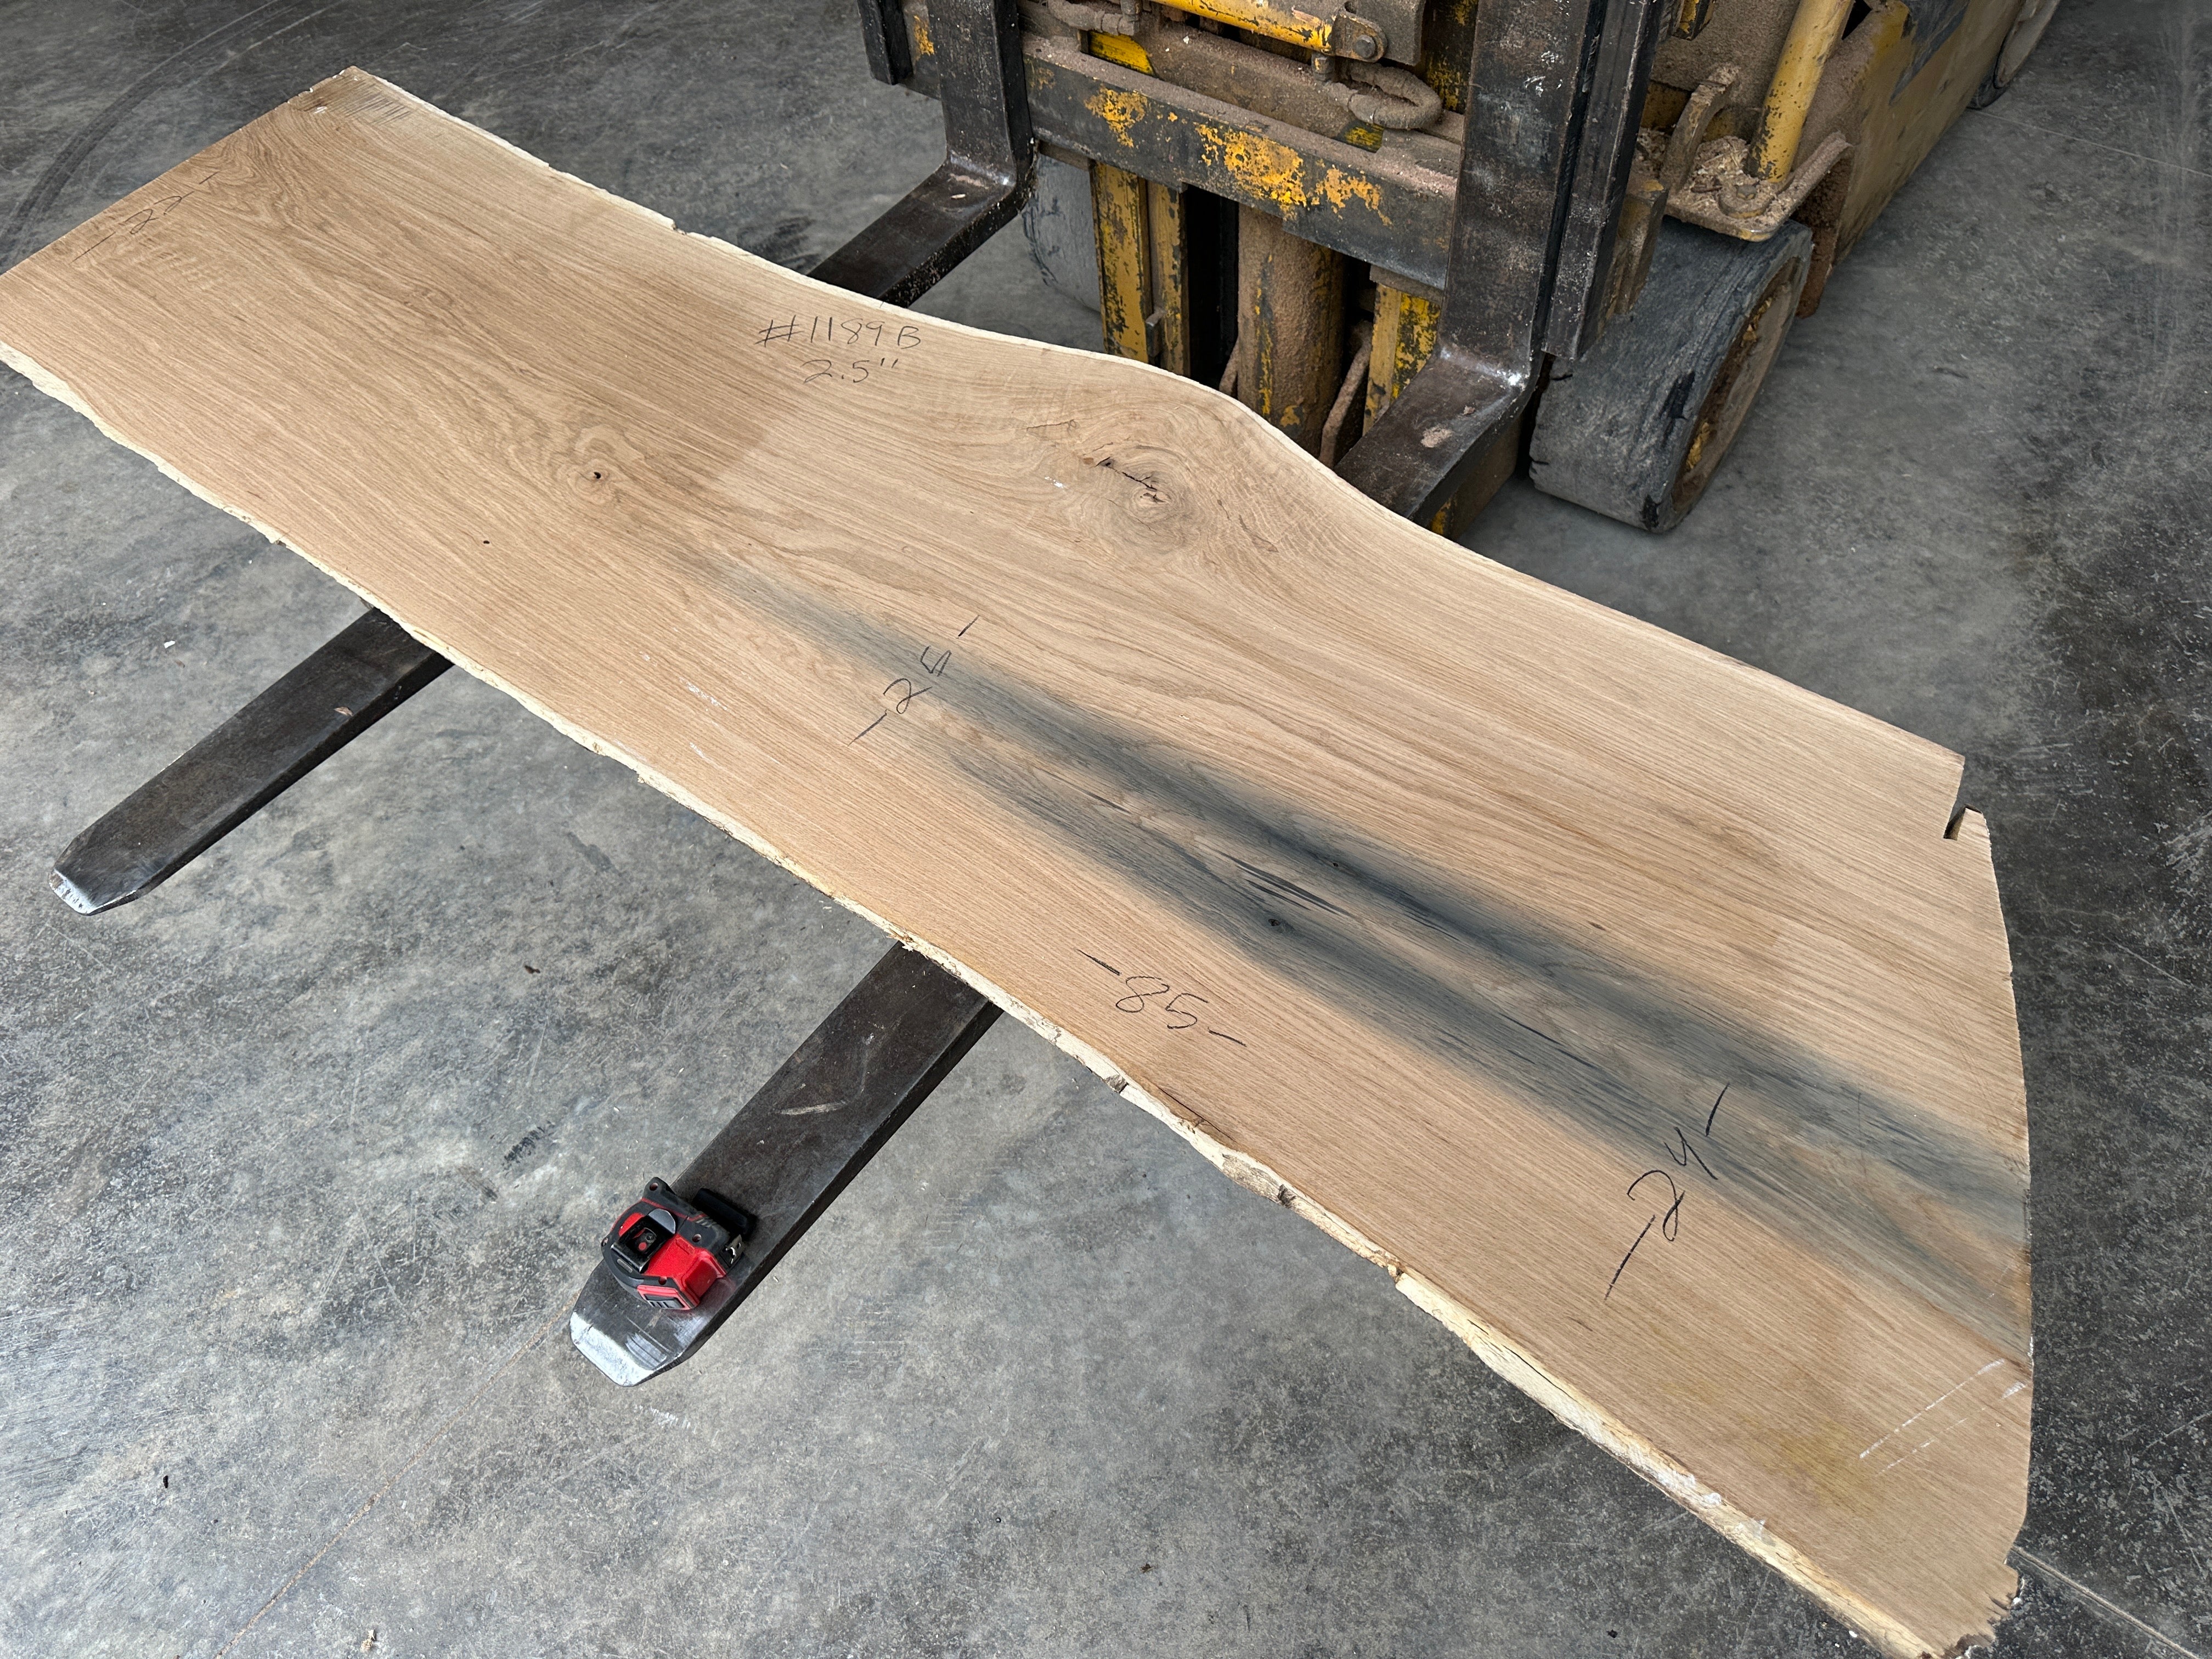 White Oak Lumber Slab 